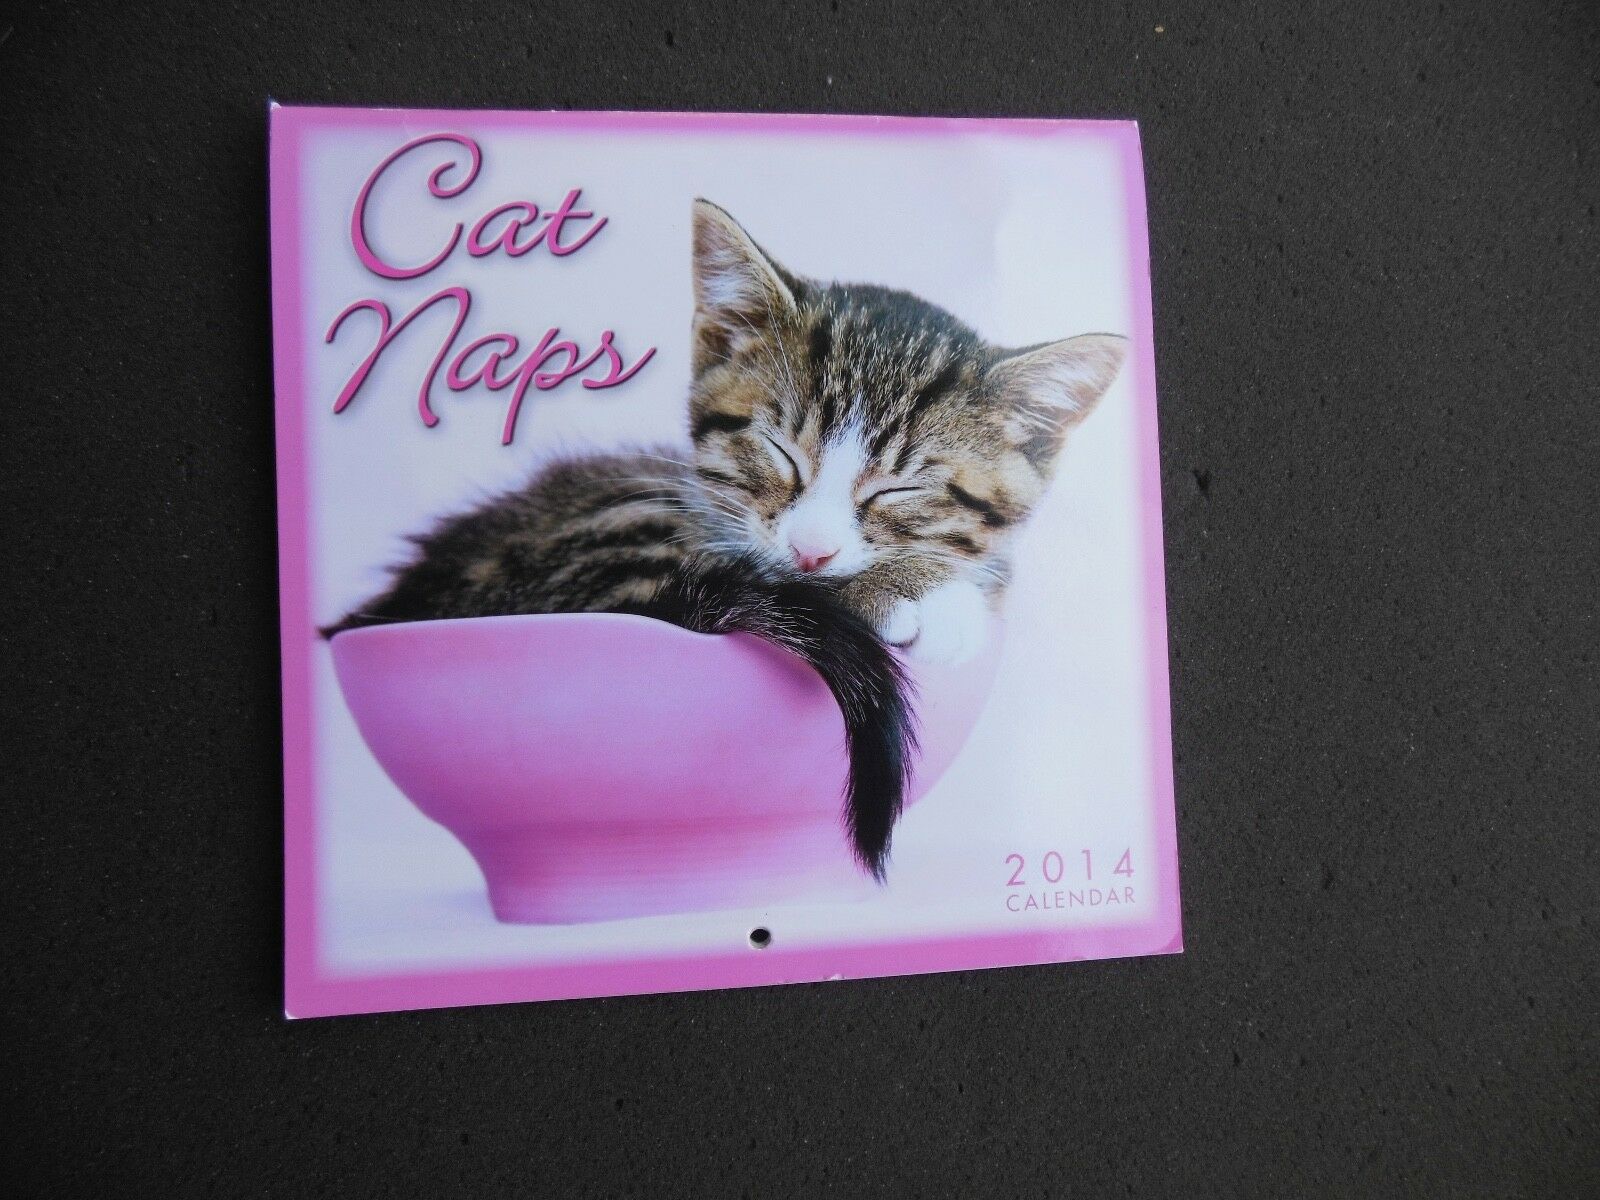 Cat Naps 2014 Calendar